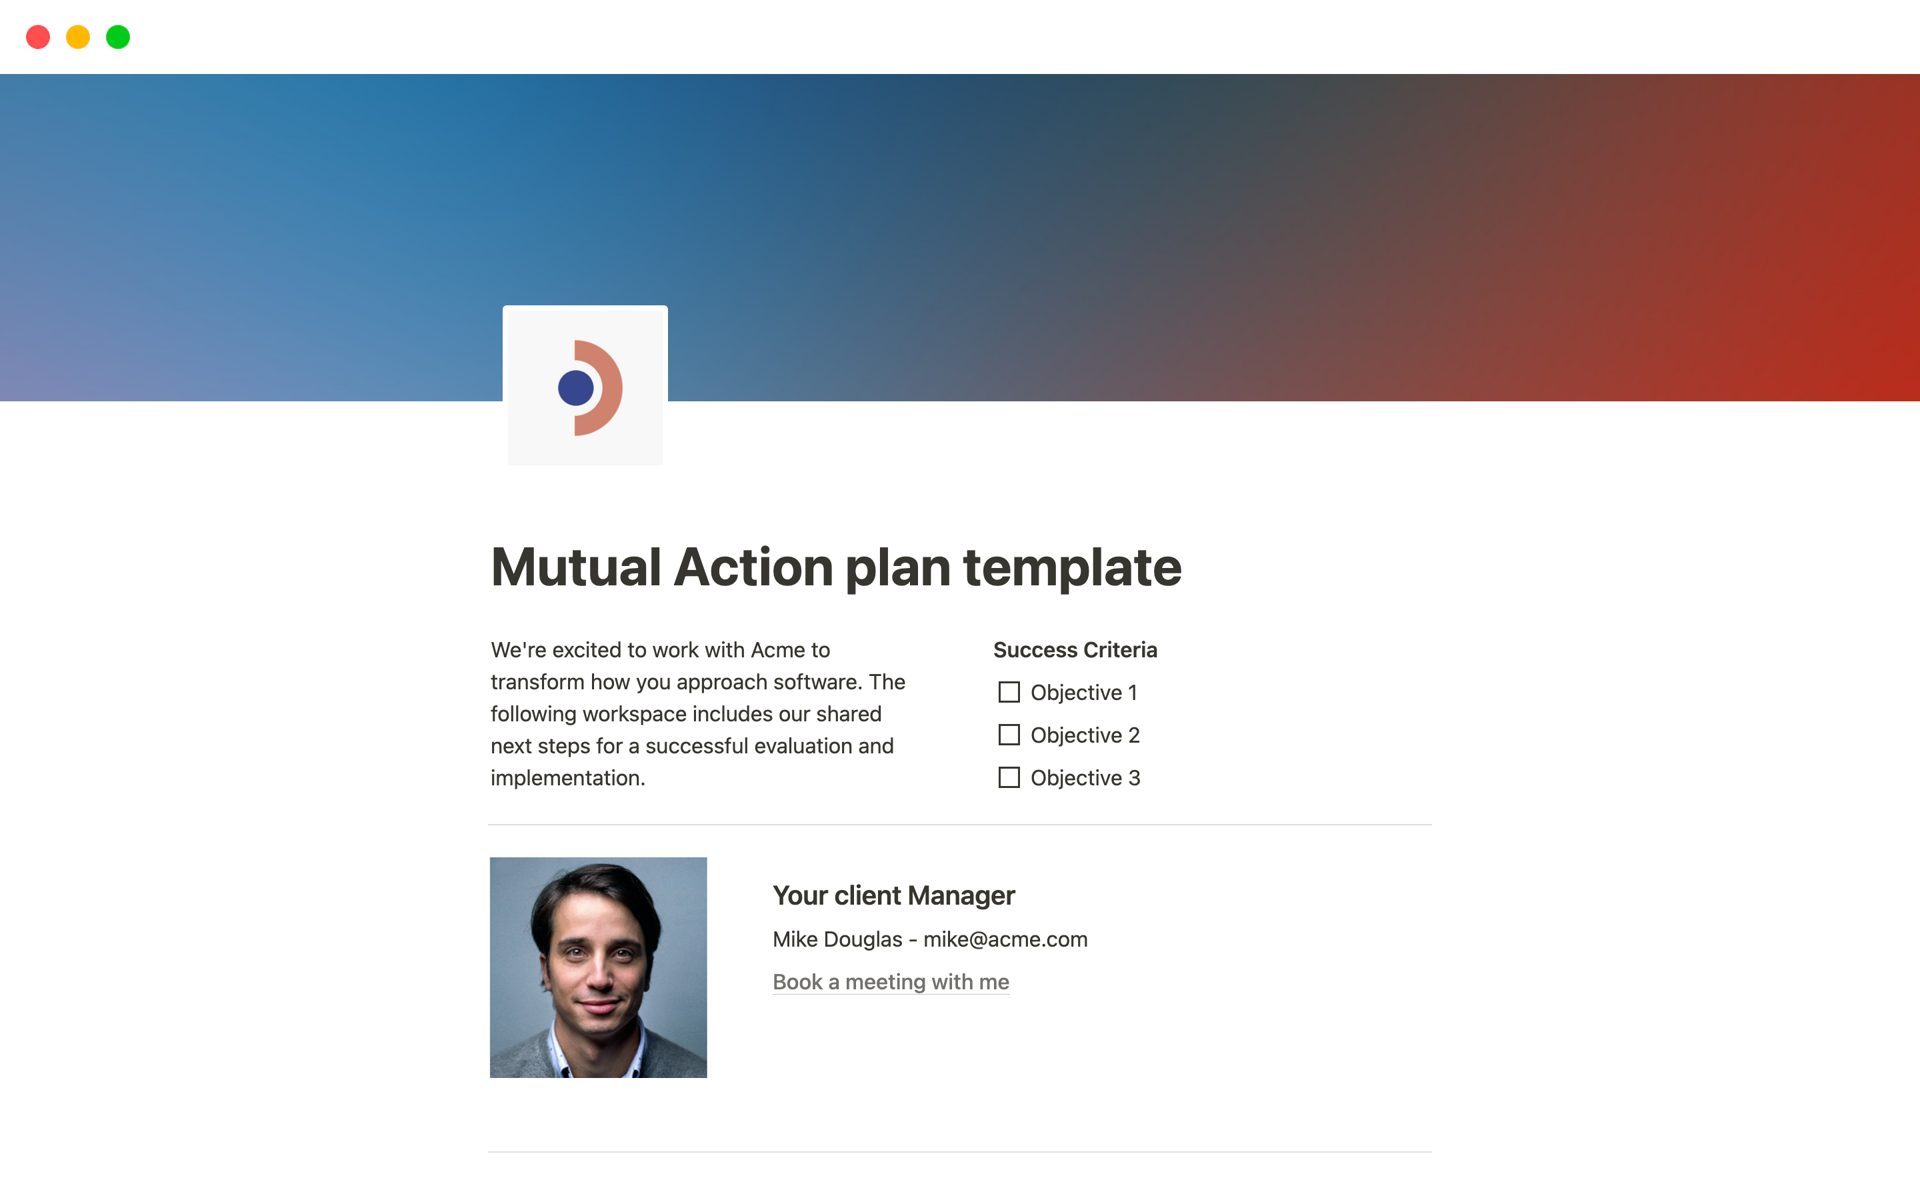 Uma prévia do modelo para Mutual Action plan template